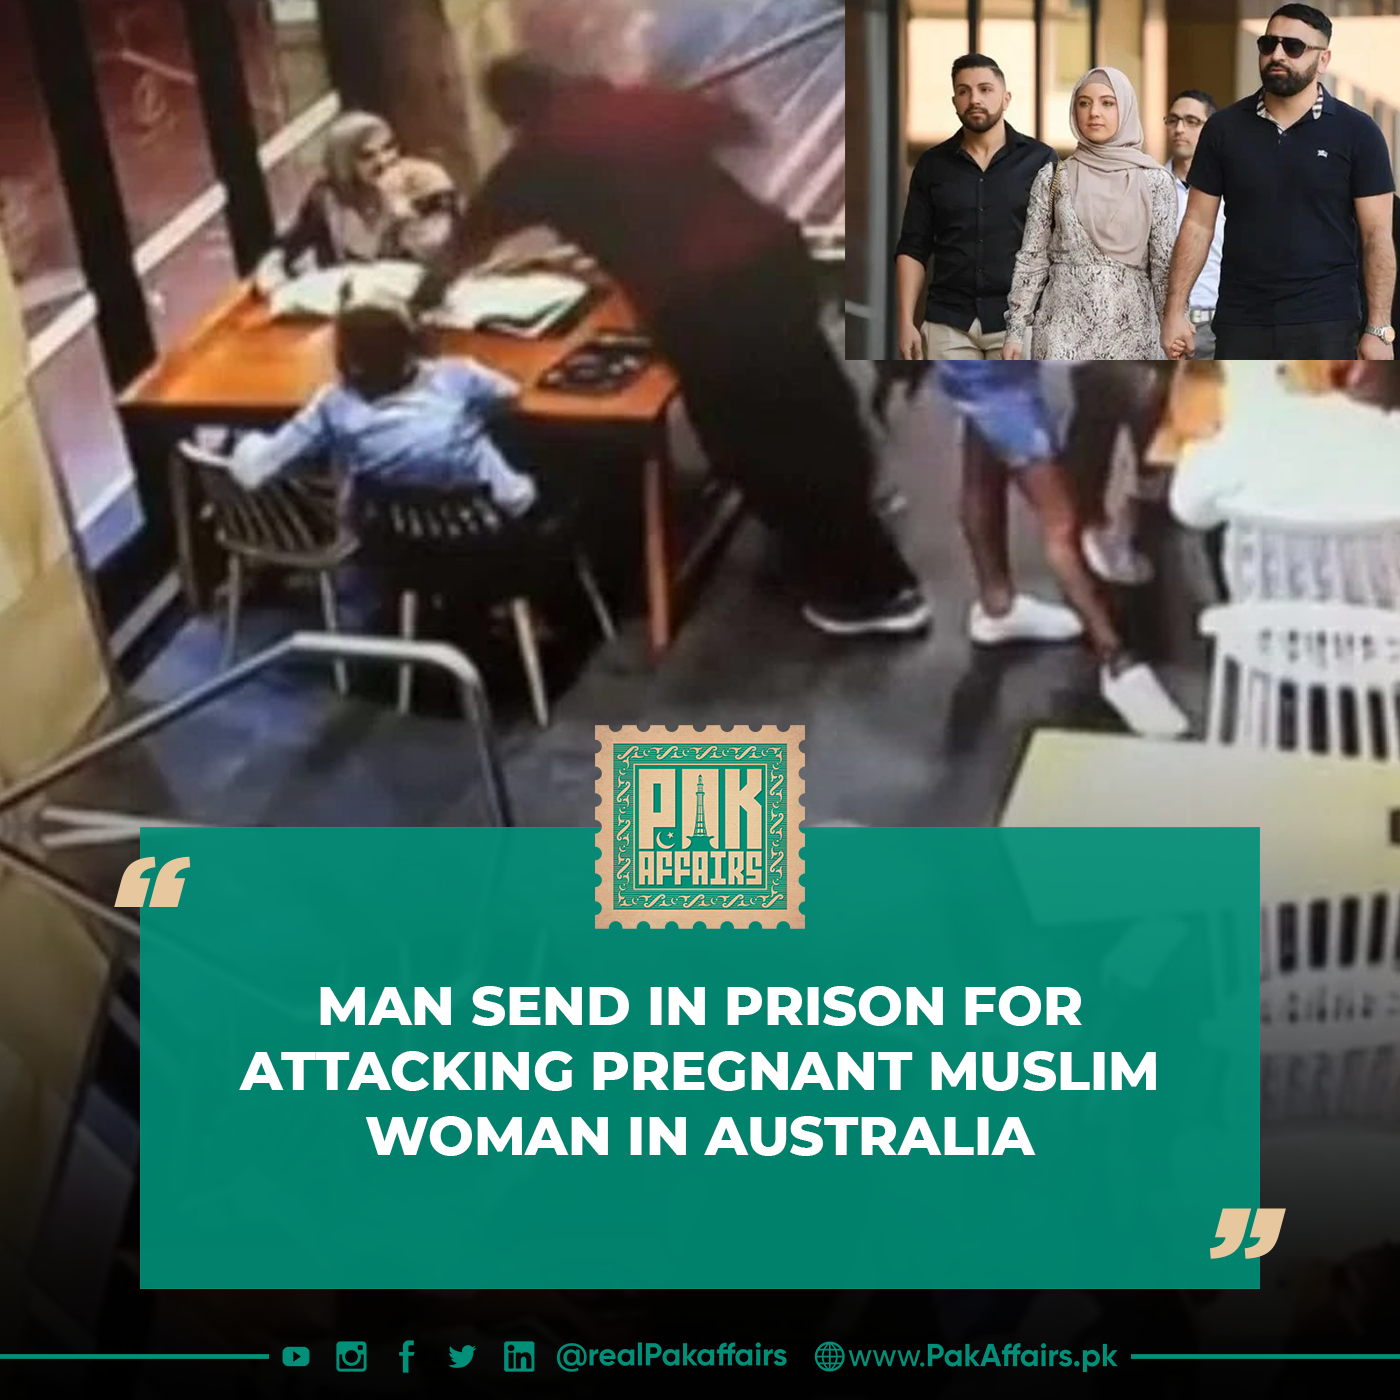 Man send in prison for attacking pregnant Muslim woman in Australia